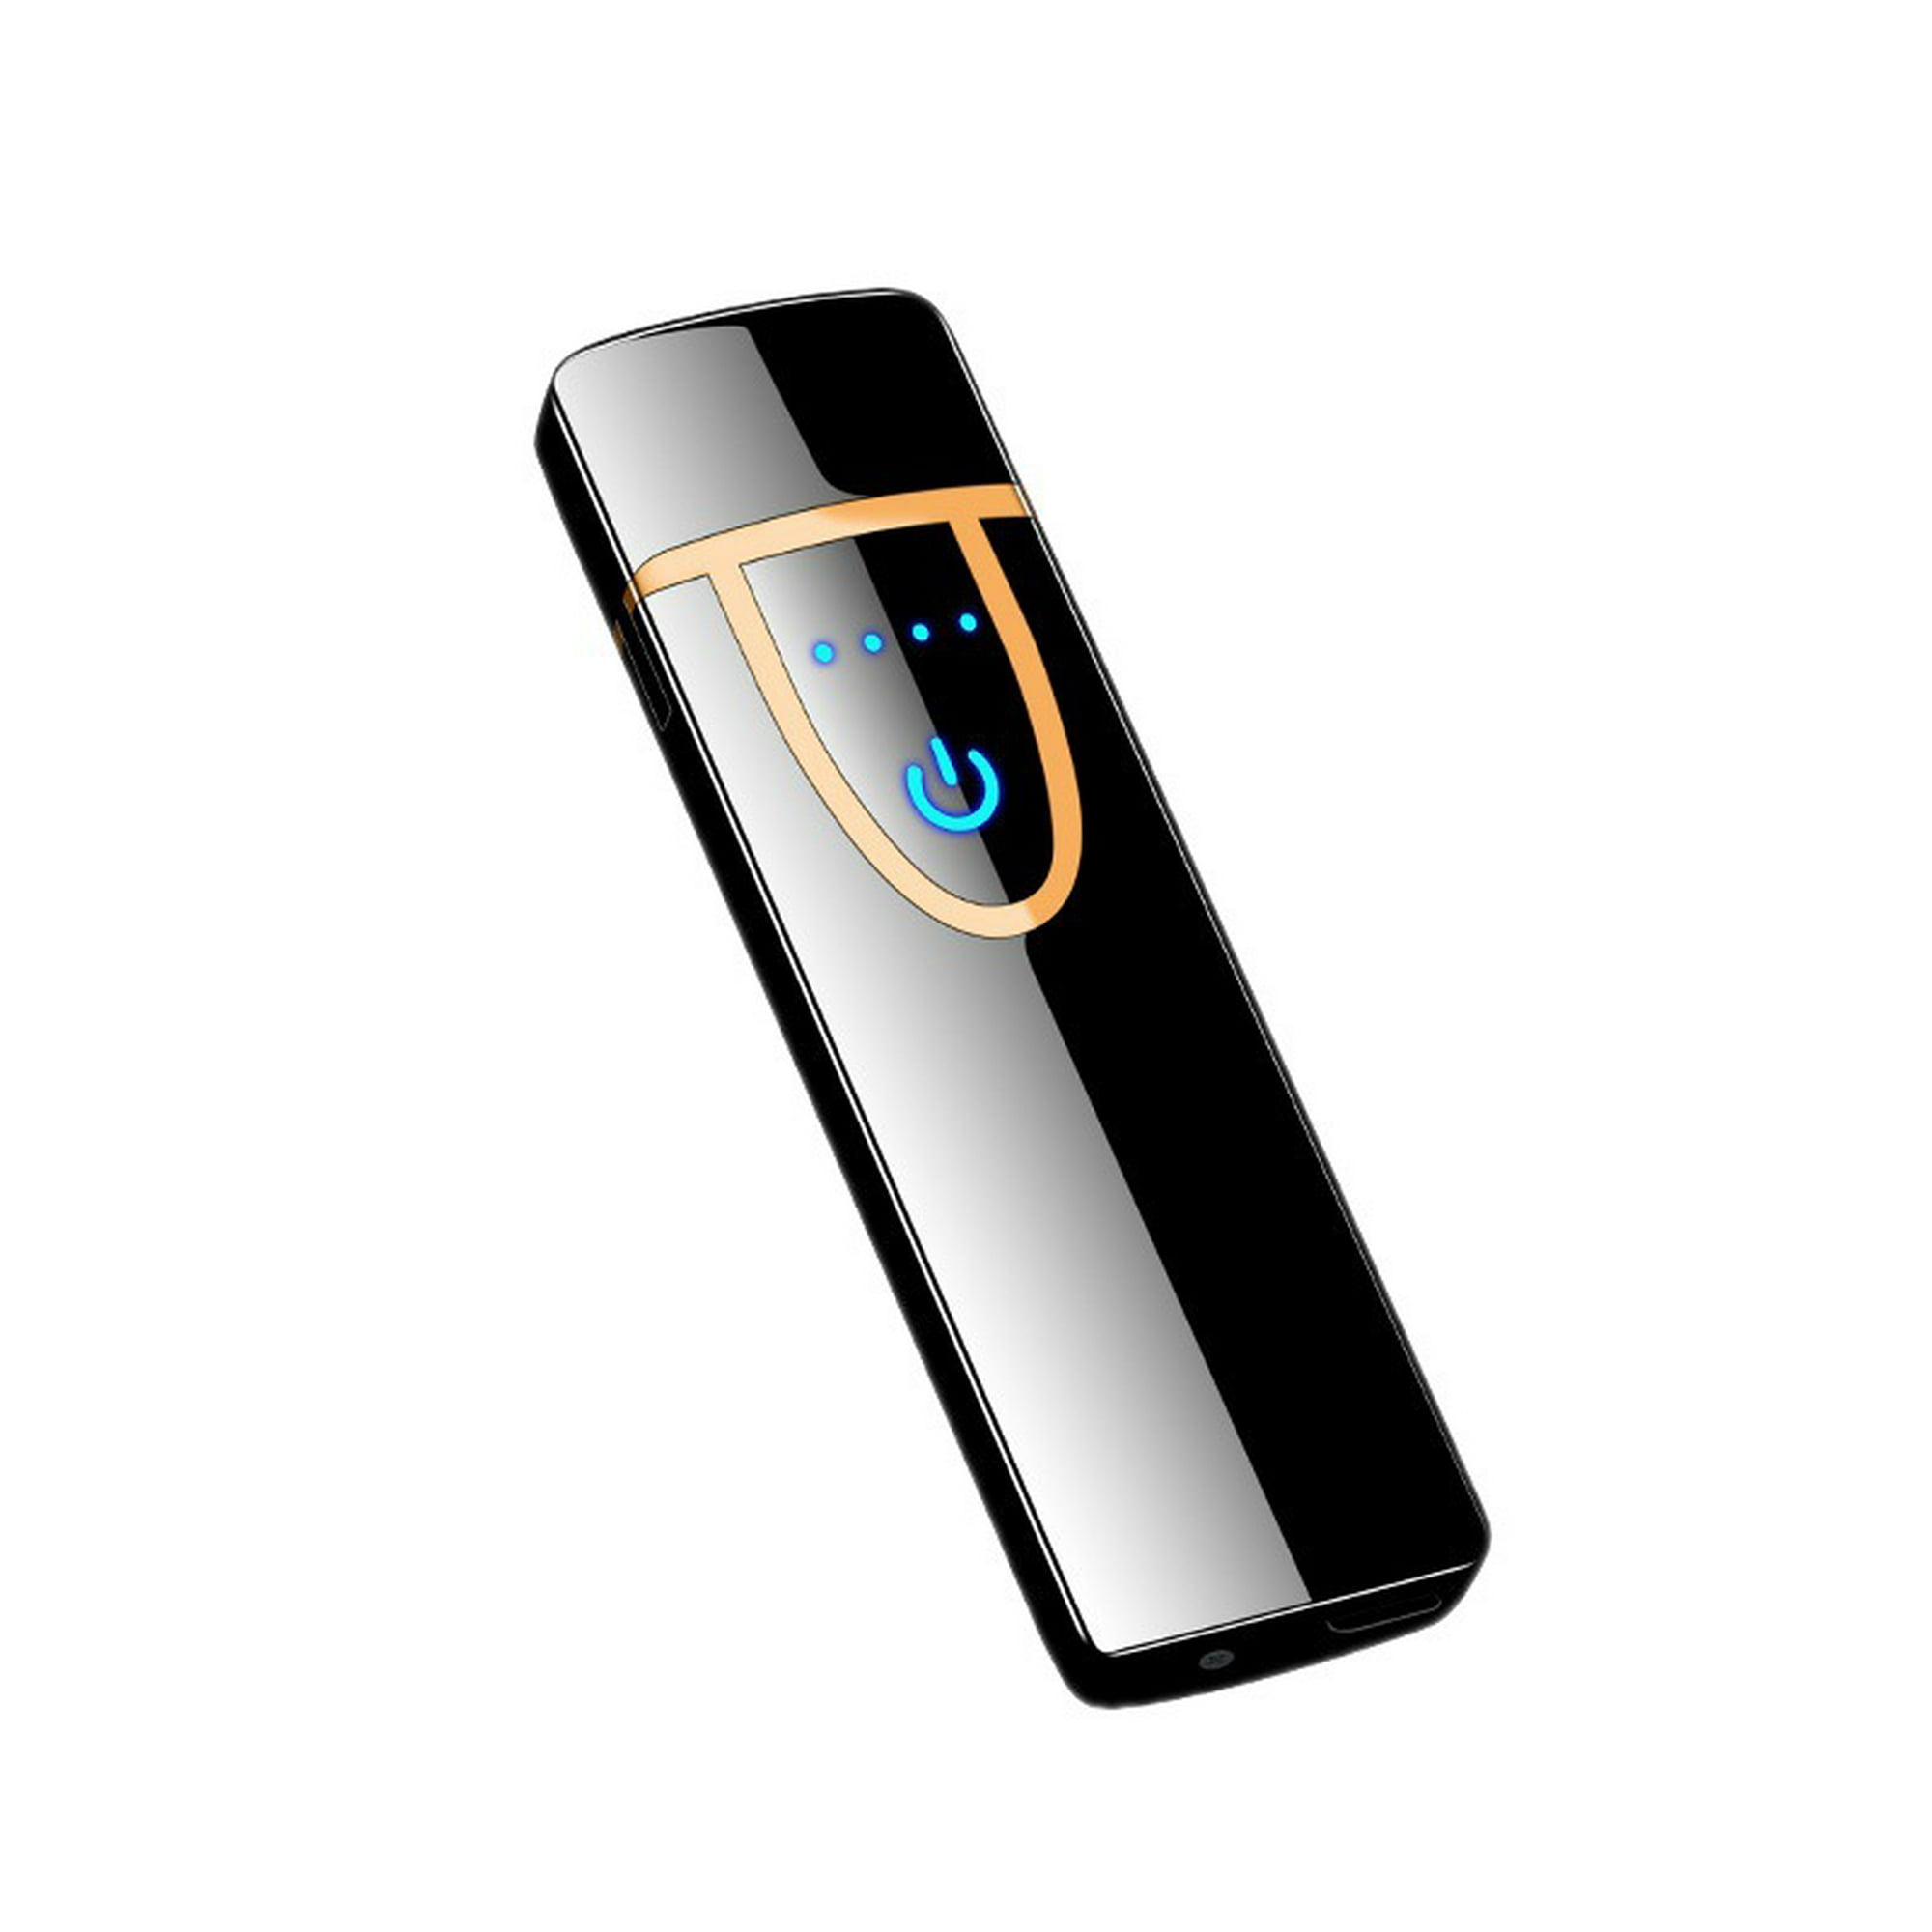 Encendedor electrónico, encendedor recargable por USB, encendedor de ciclo  de encendido táctil, encendedor de plasma a prueba de viento para hombres